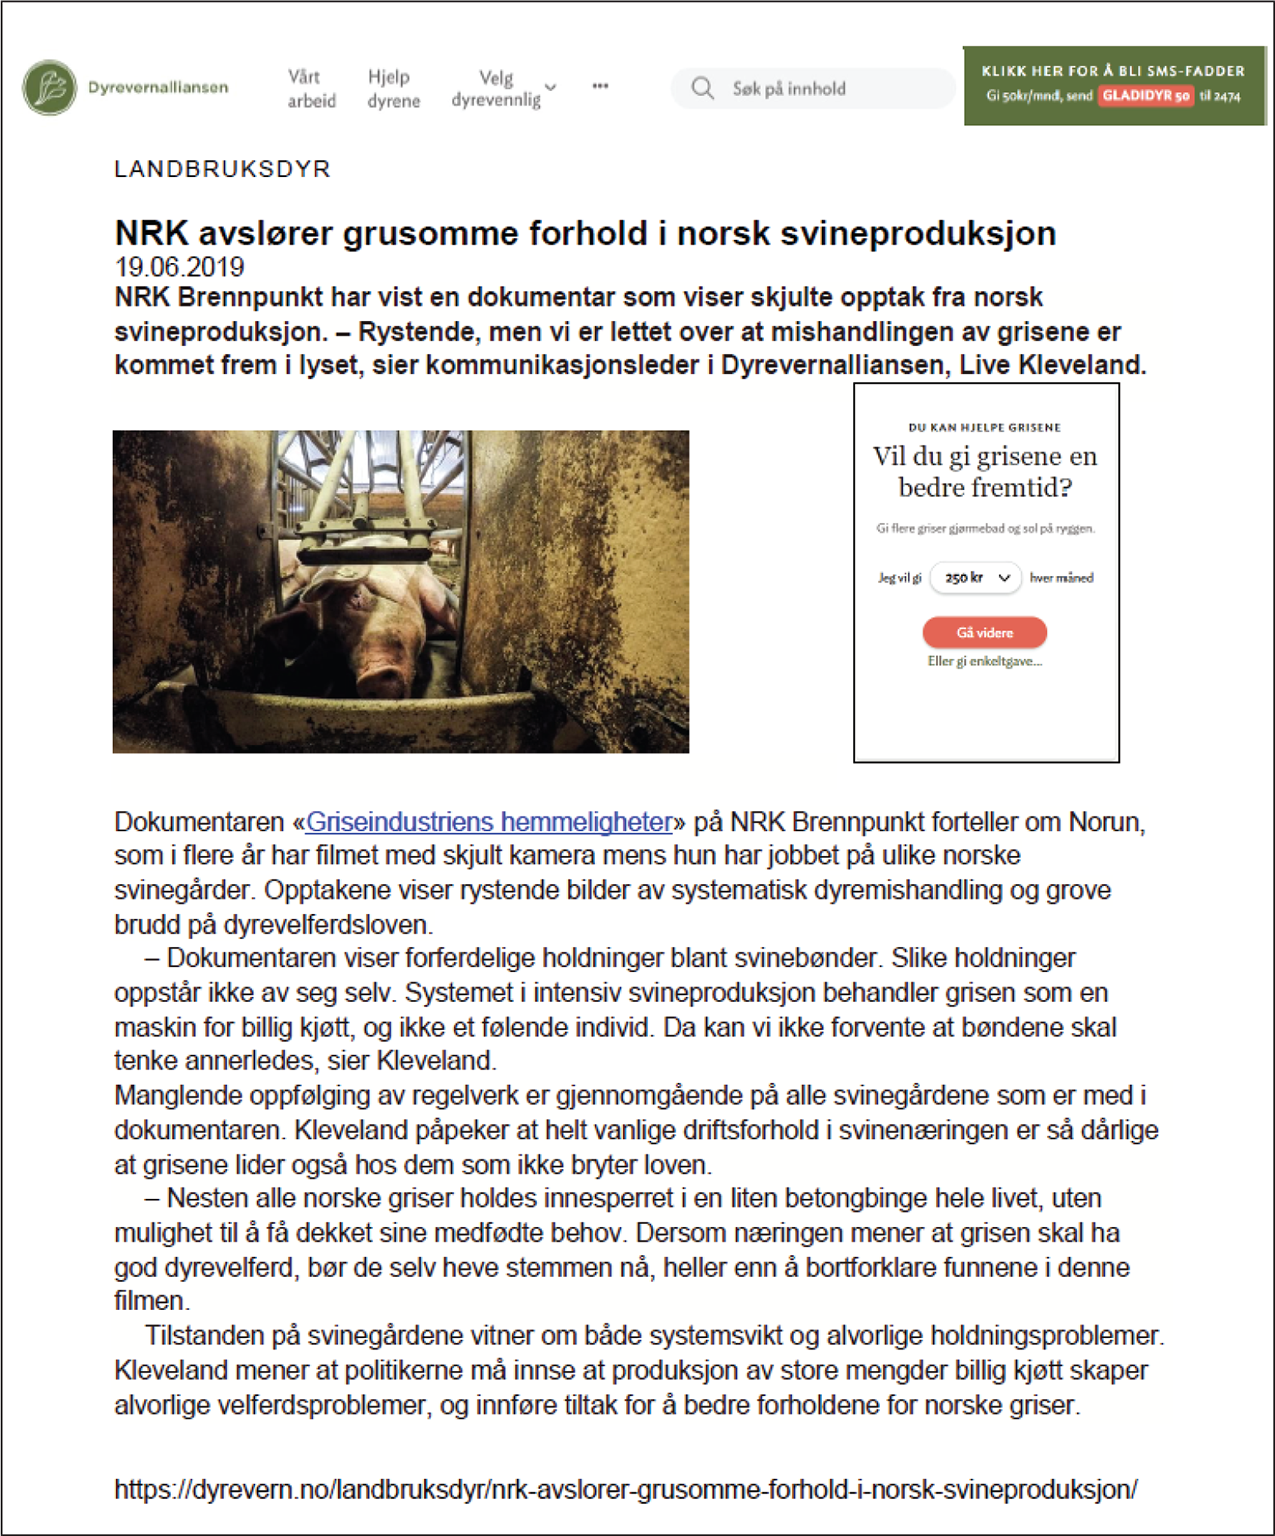 Faksimile av artikkel fra Dyrevernalliansen, med tittelen "NRK avslører grusomme forhold i norsk svineproduksjon". Artikkelbildet viser en død gris i en binge.